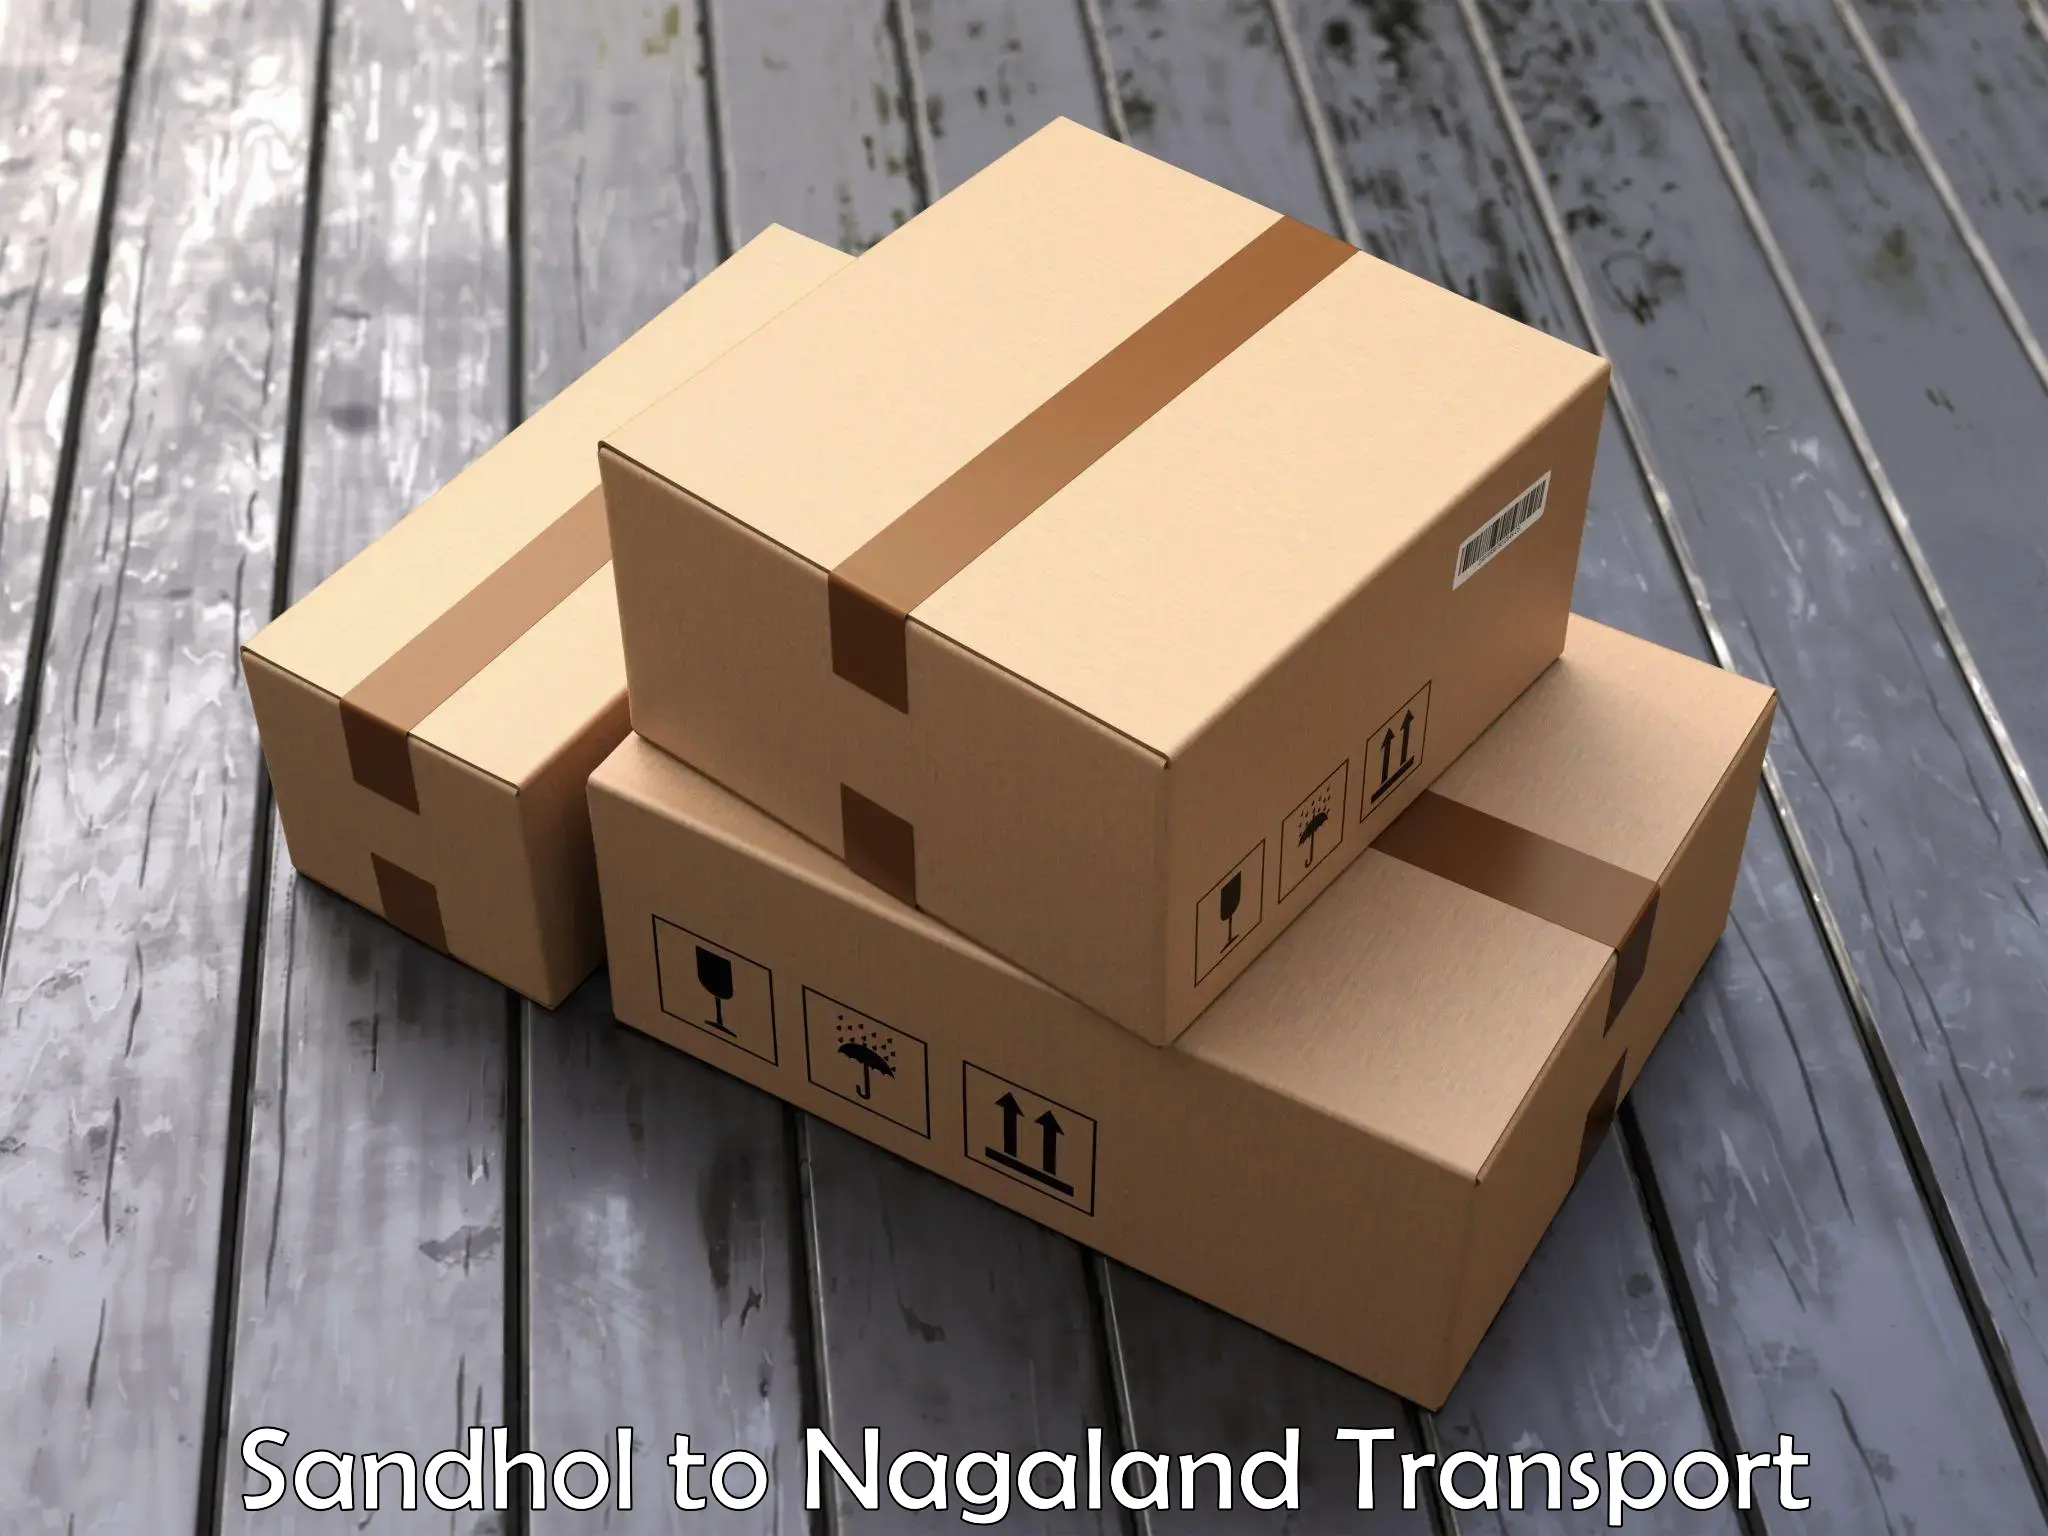 Bike transport service Sandhol to NIT Nagaland